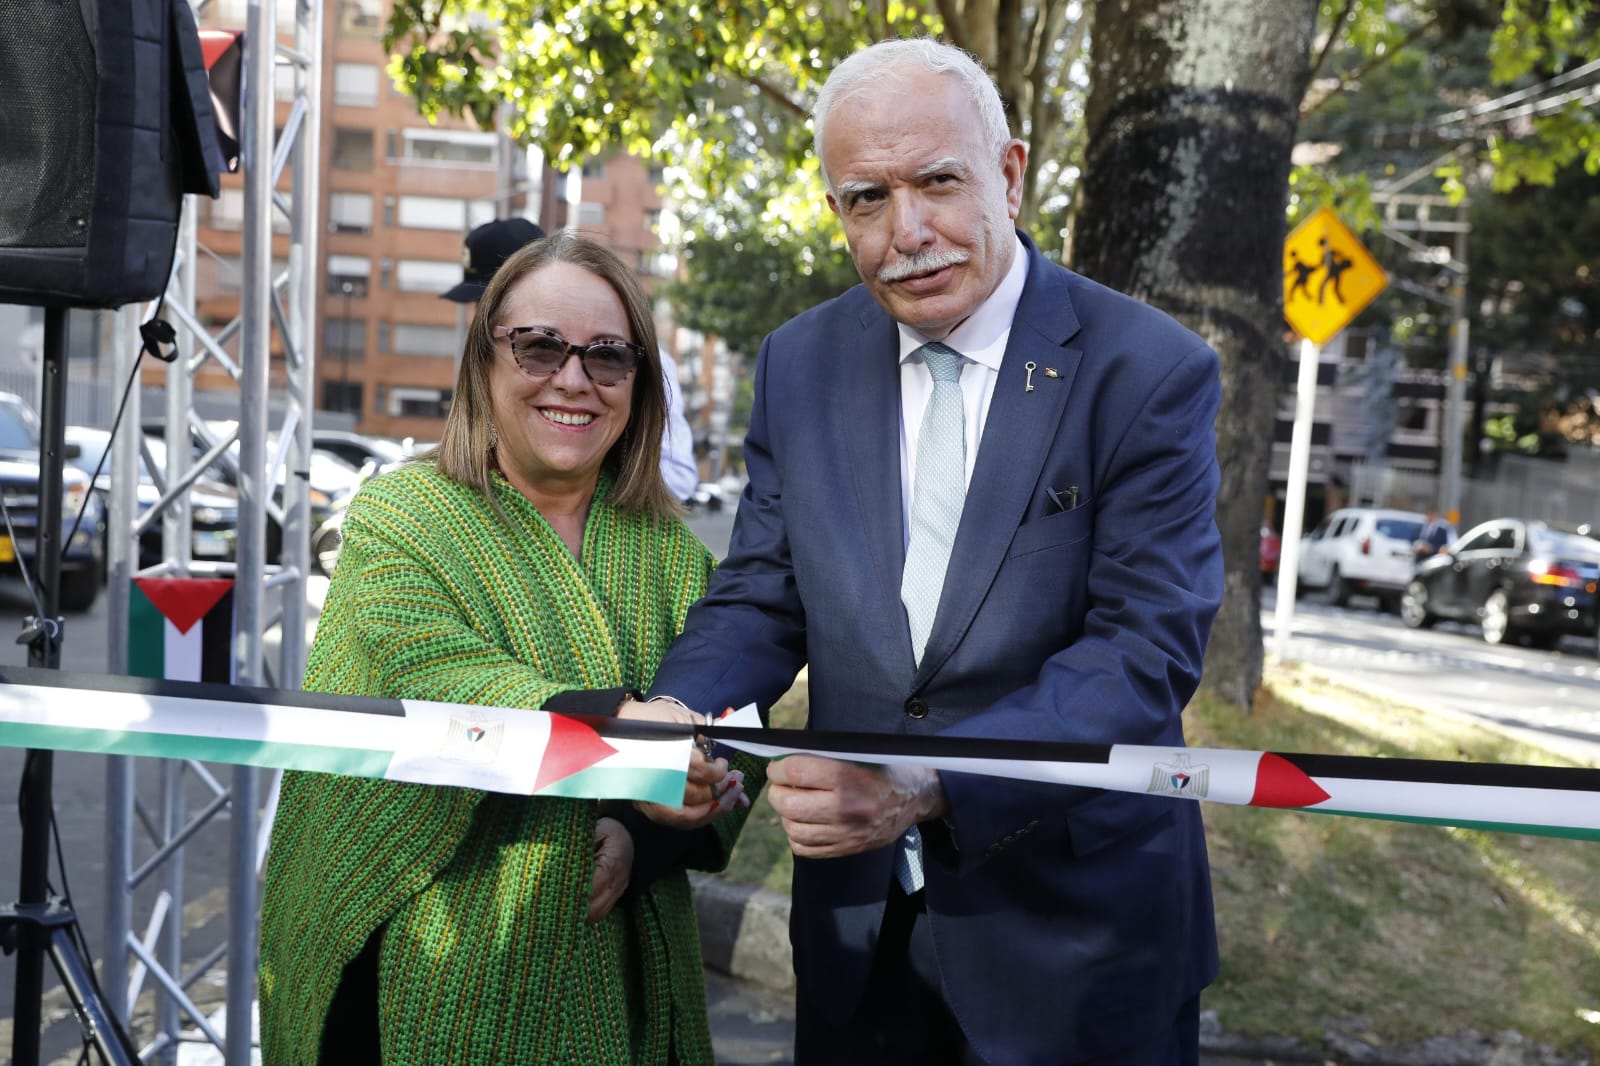 افتتاح شارع دولة فلسطين في العاصمة الكولومبية بوغوتا